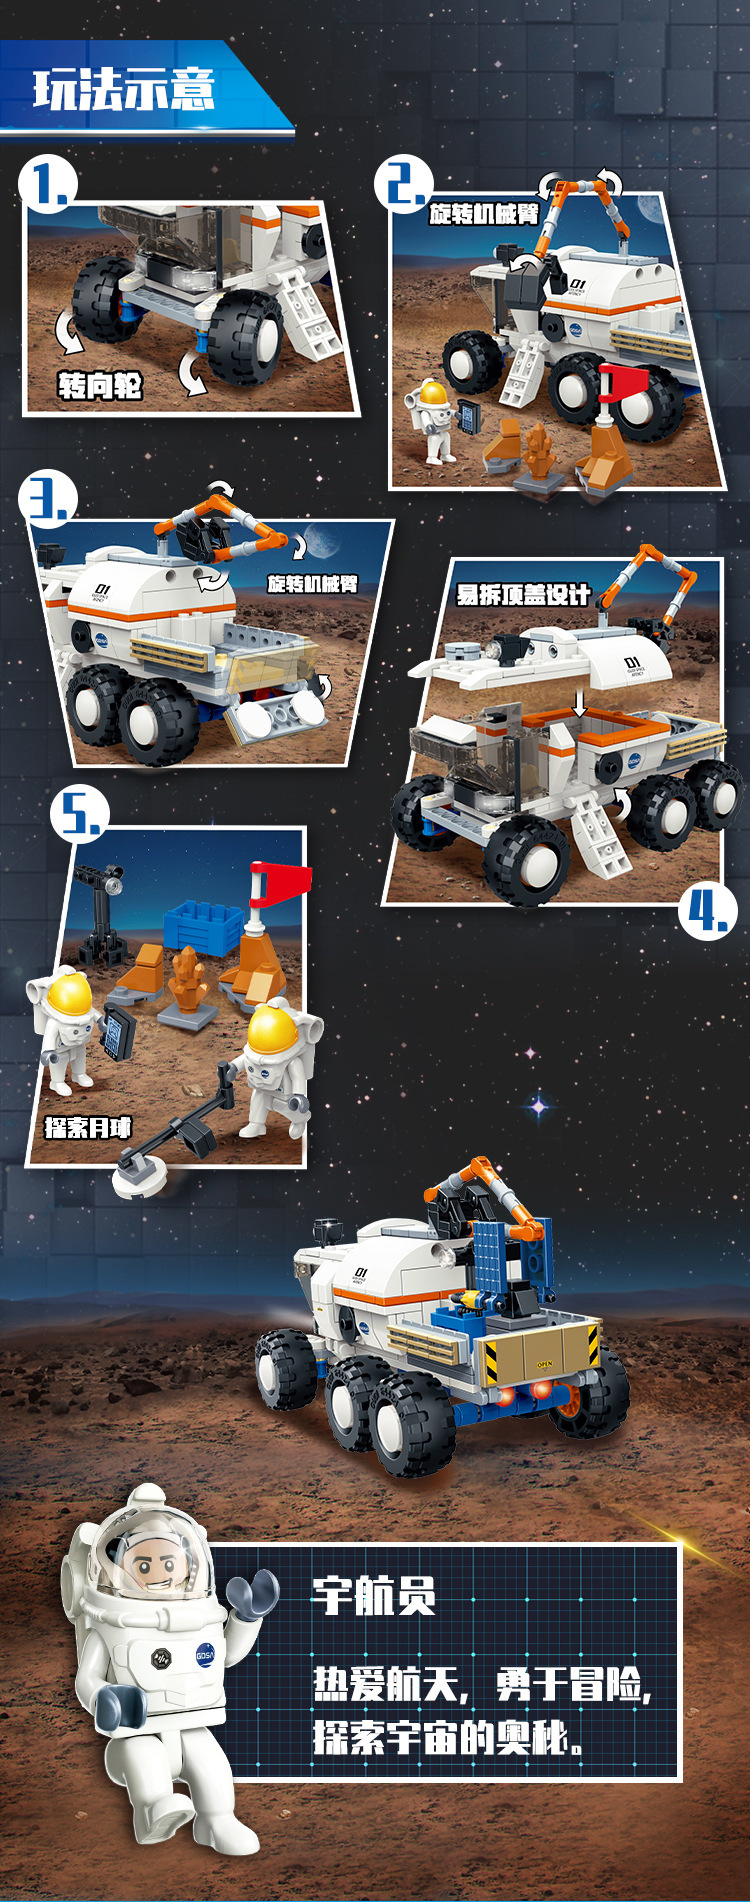 新乐新古迪10801-4 航天文化飞机宇航员儿童乐高式拼装颗粒积木男孩玩具详情8